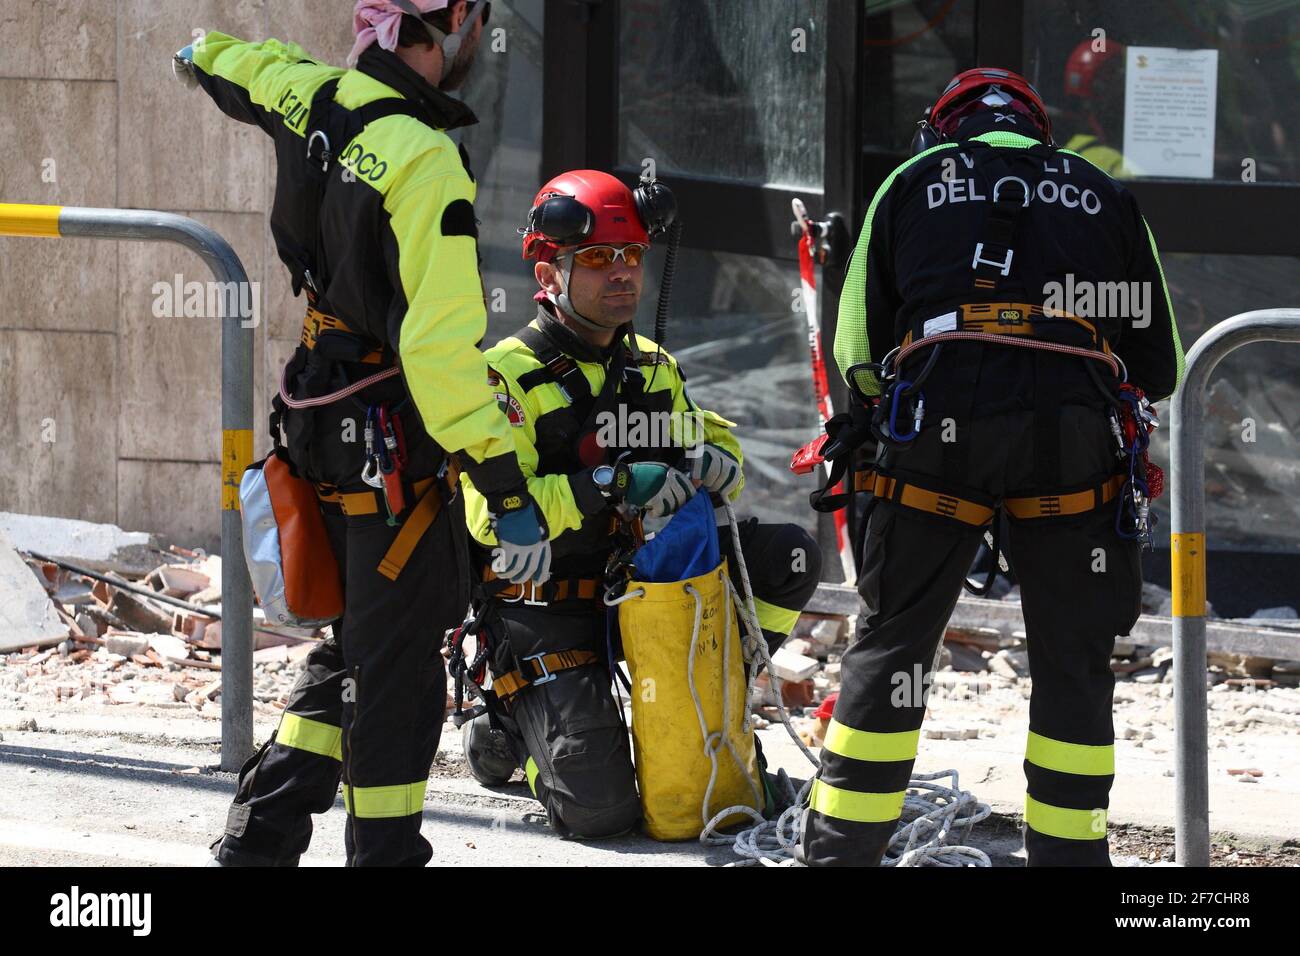 L'Aquila, Italien - 6. April 2009: Retter bei der Arbeit in den Trümmern der Stadt, die durch das Erdbeben zerstört wurden Stockfoto